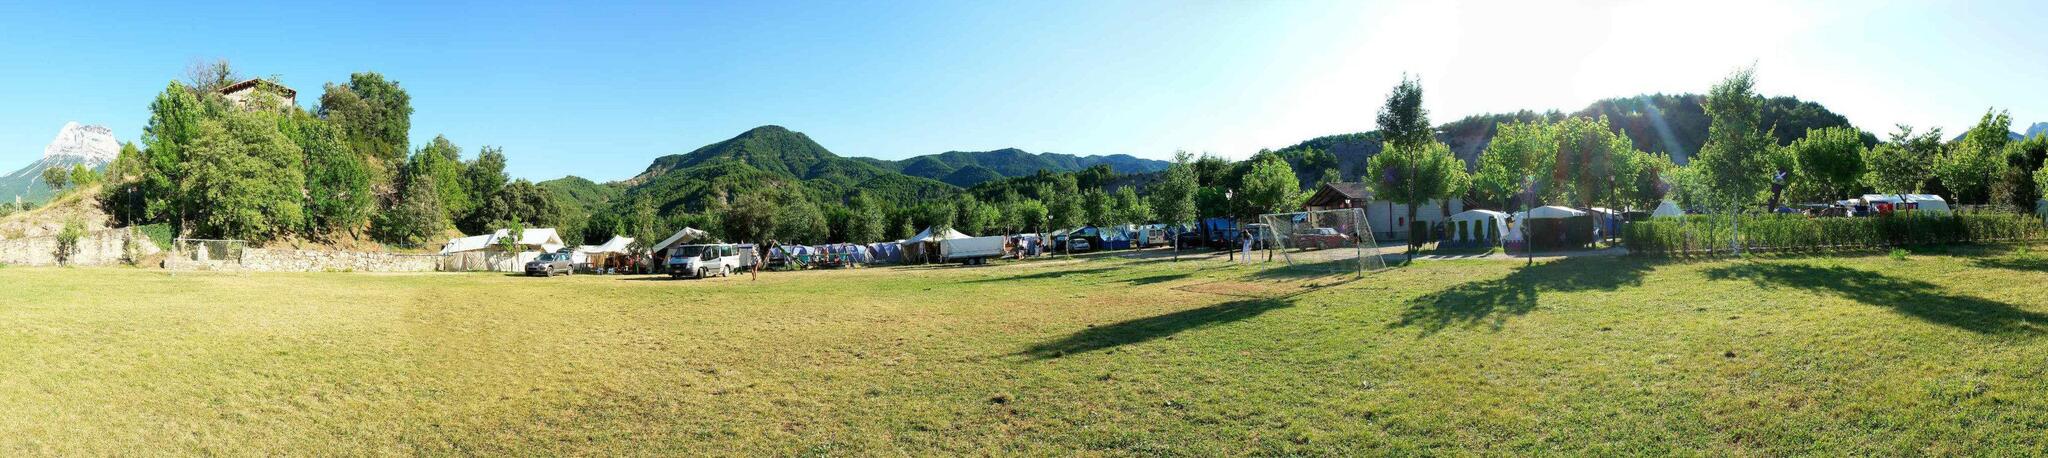 camping valle de anisclo 13096 